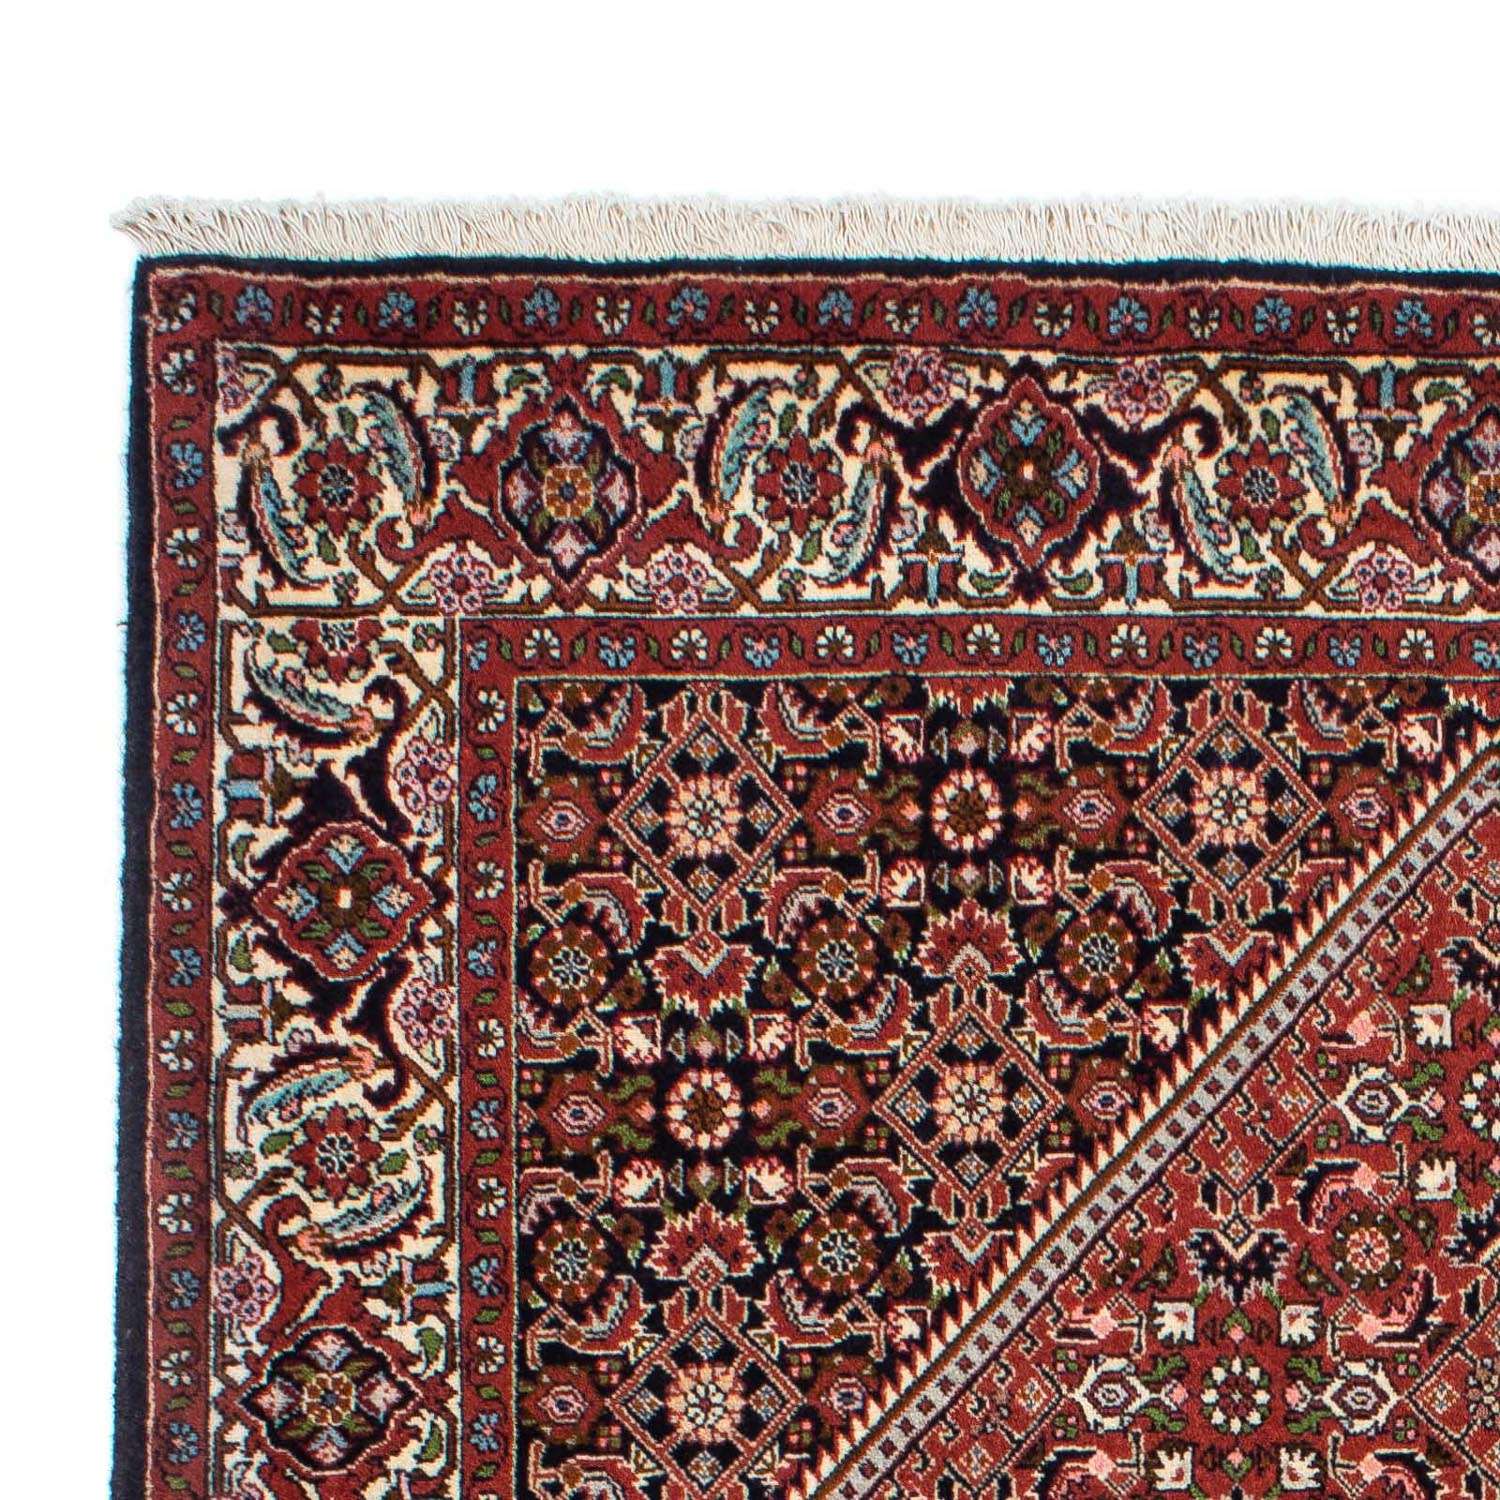 Perzisch tapijt - Bijar - 224 x 140 cm - rood